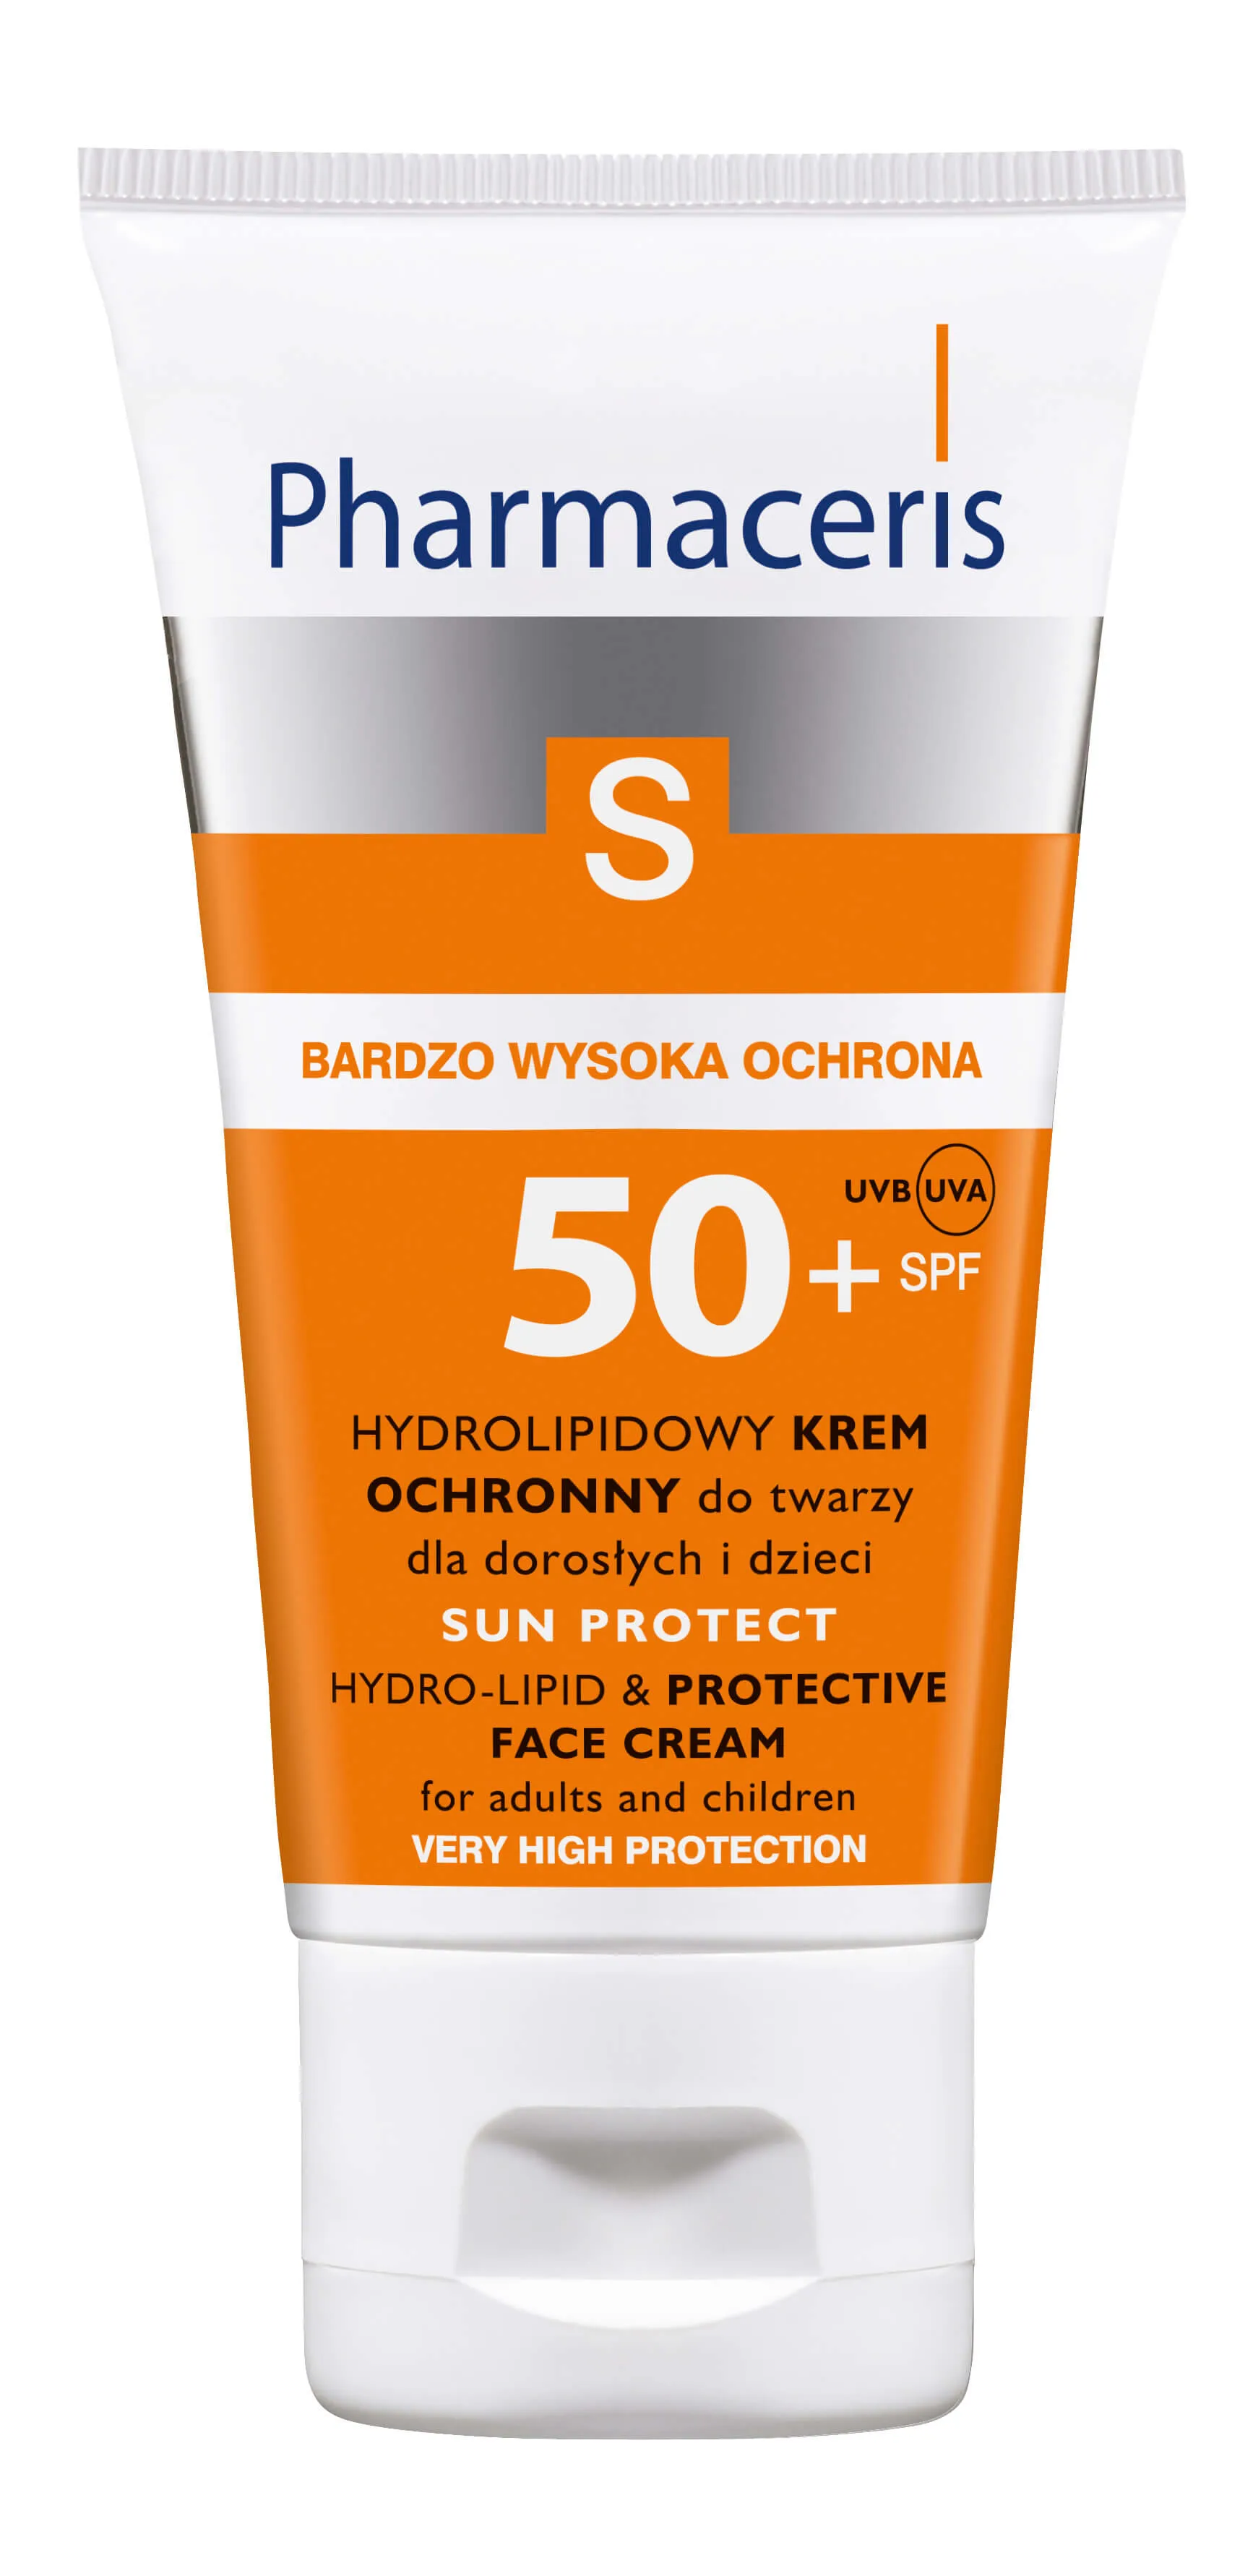 Pharmaceris S, krem hydrolipidowy do twarzy SPF 50+, 50 ml